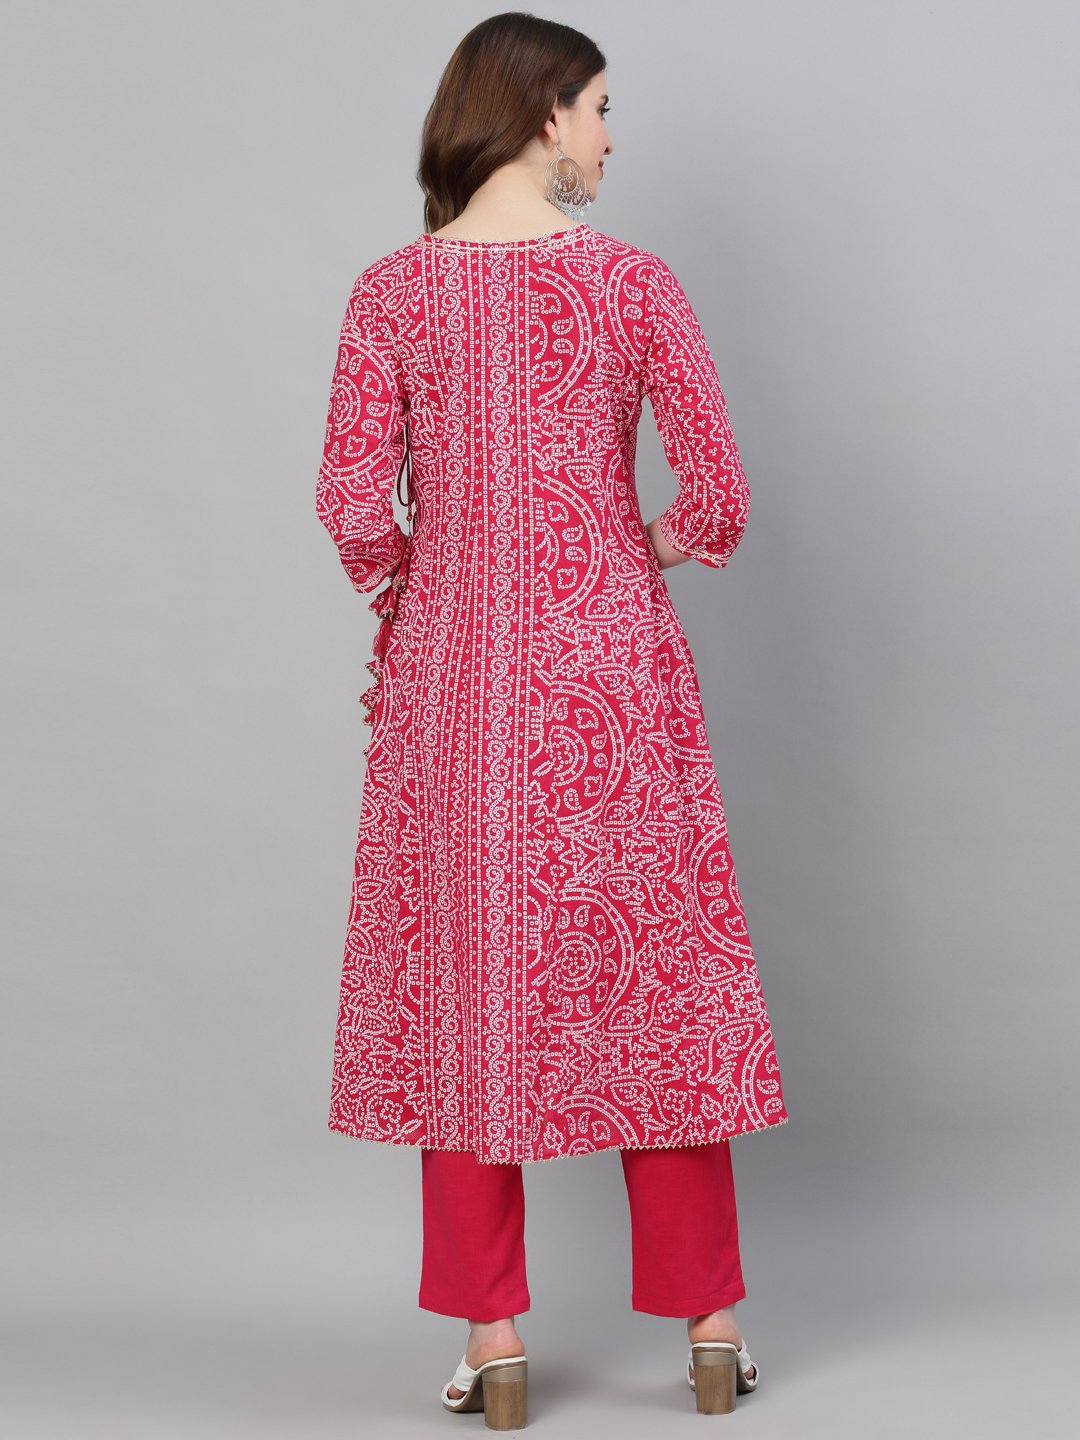 Ishin Women's Cotton Pink Bandhani Printed Anarkali Kurta